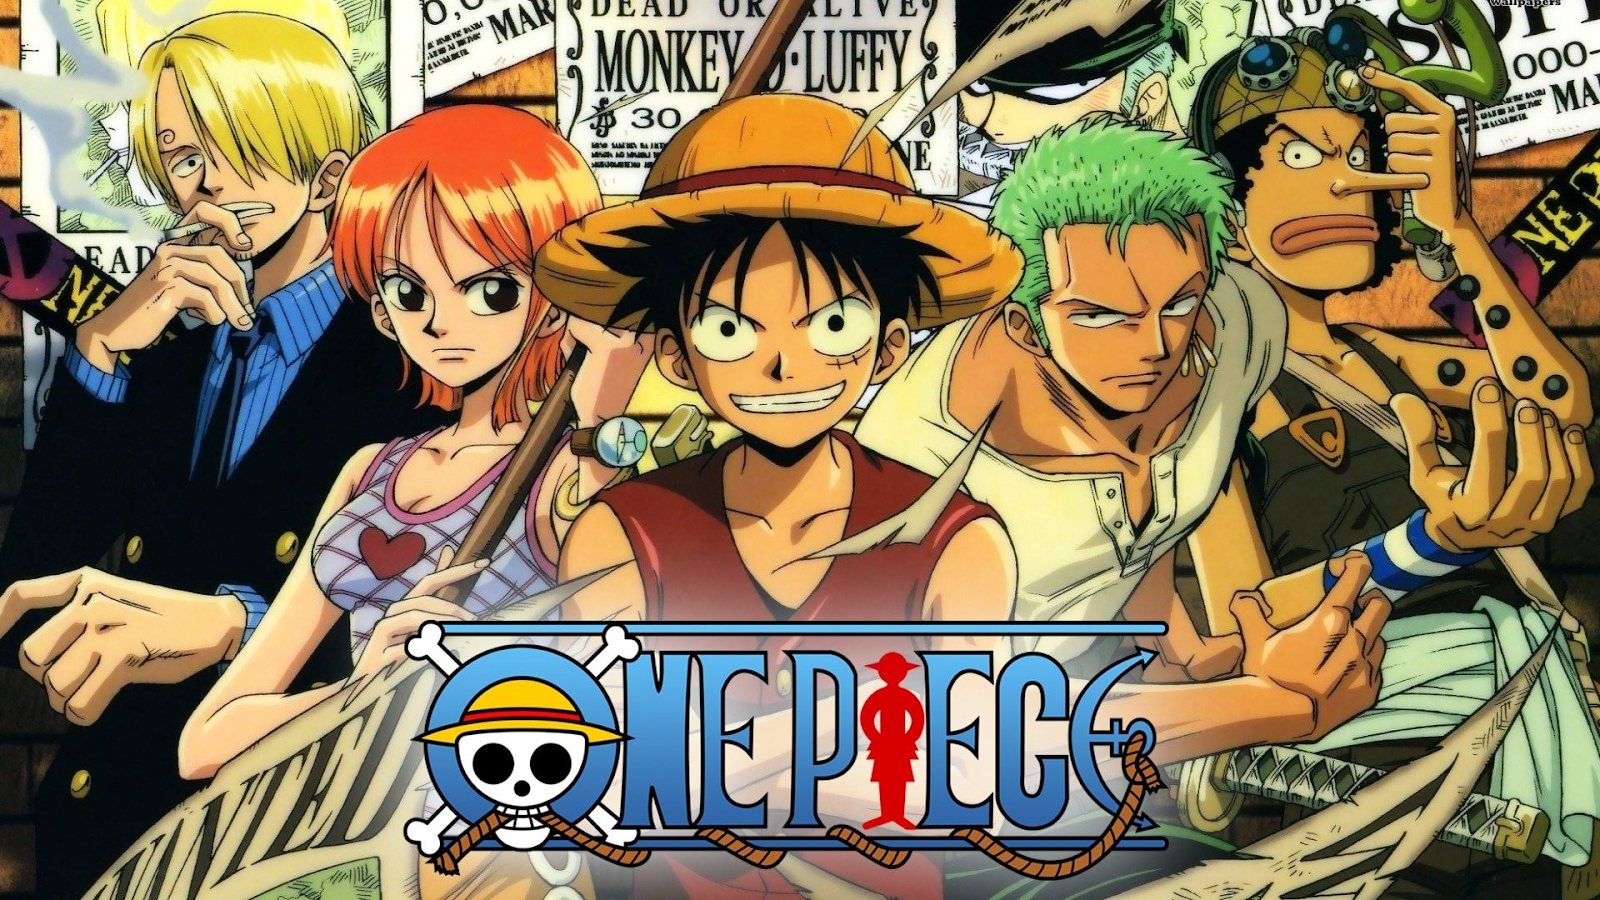 Marumieta in One Piece.